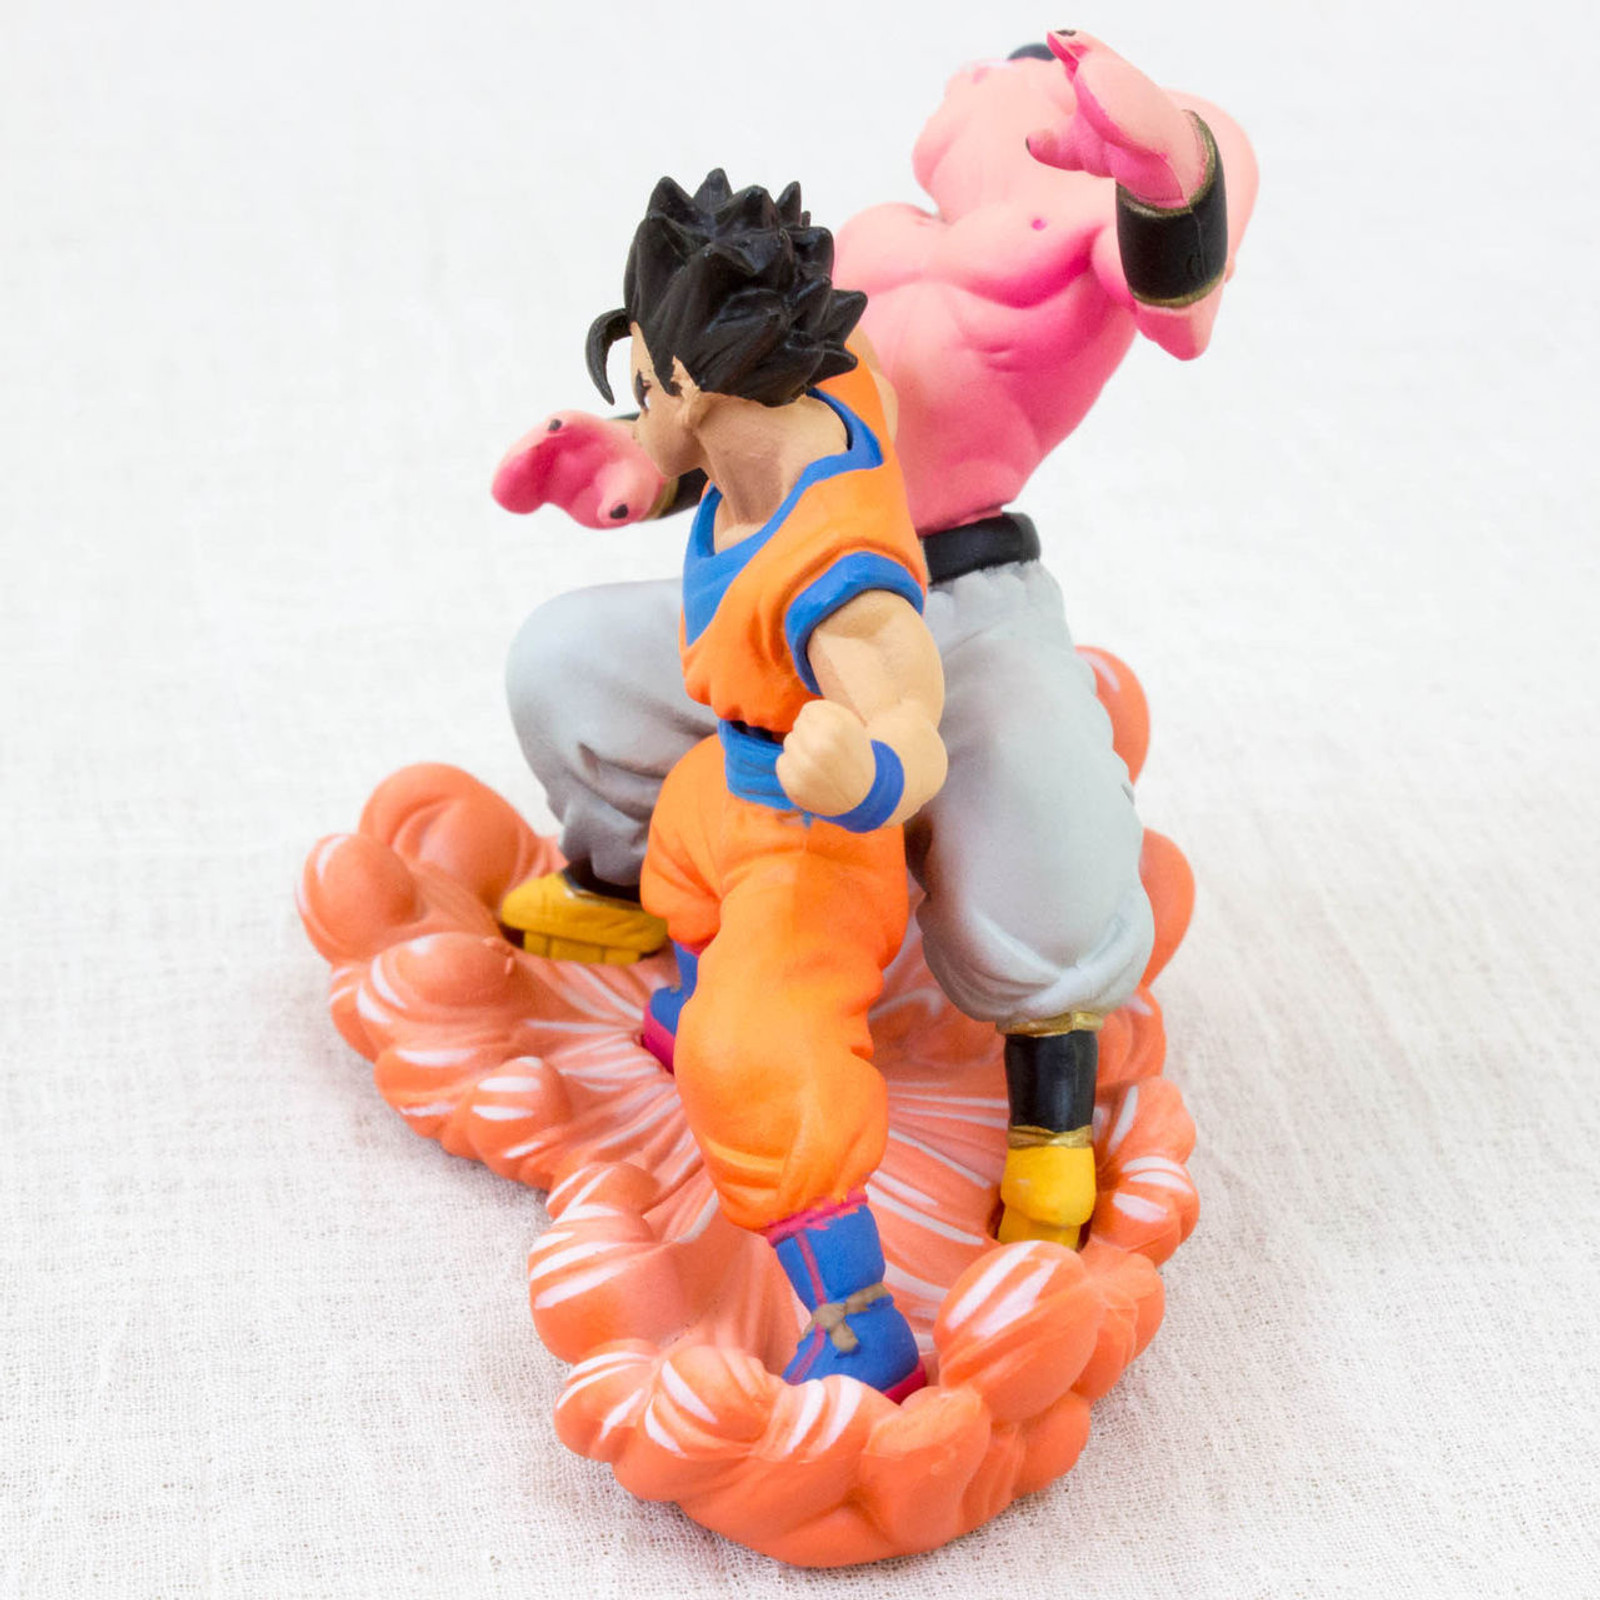 RARE! Dragon Ball Z Mini Figure Gohan vs Majin Boo Megahouse JAPAN ANIME CAPSULE